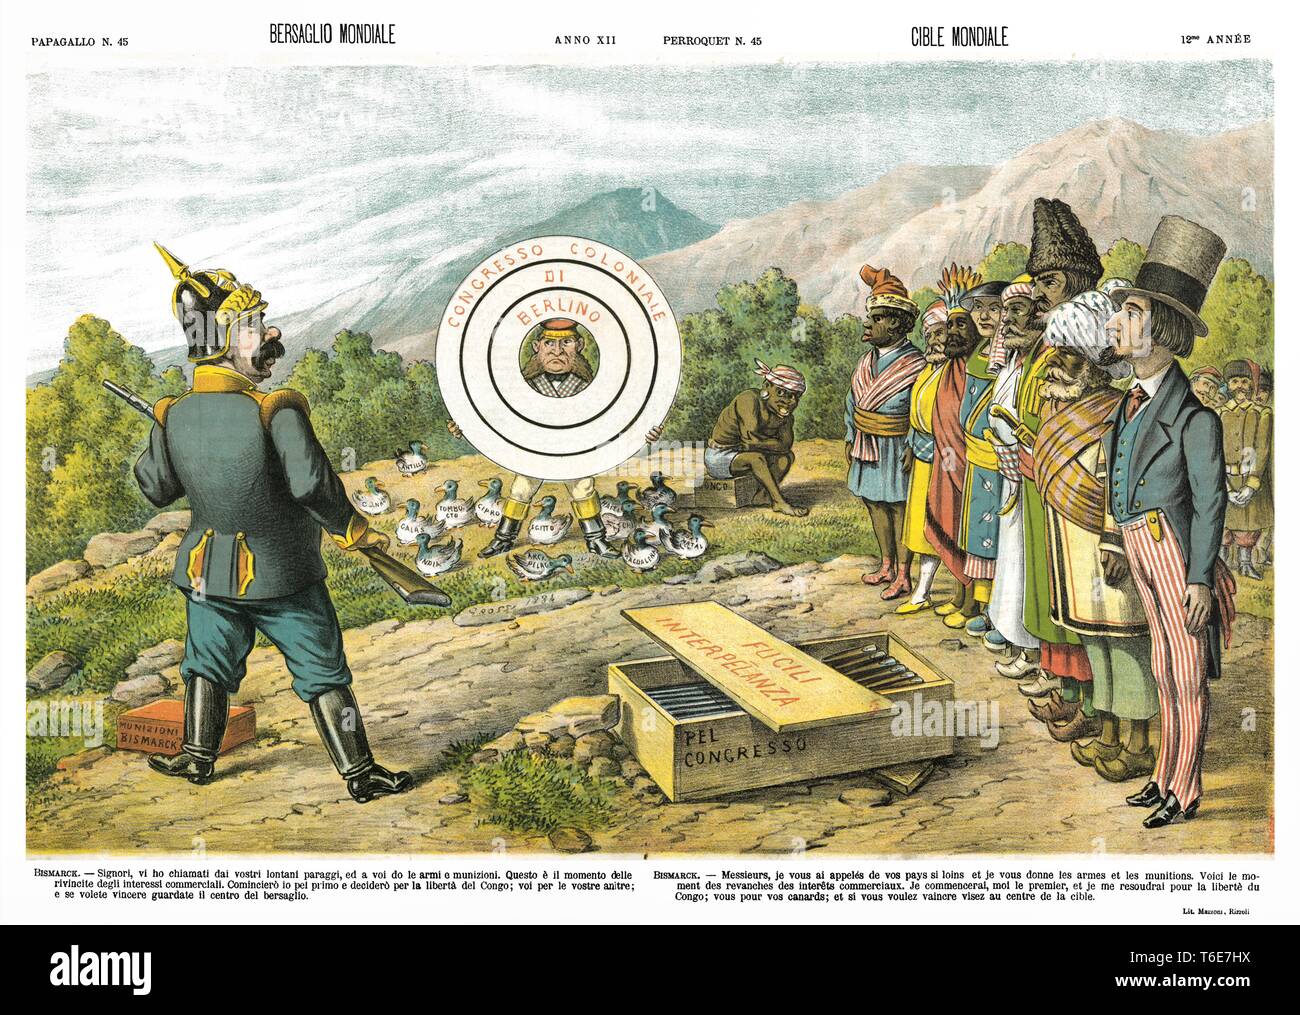 Objetivo mundial de caricatura satírica semanal Il Papagallo 1884 Foto de stock